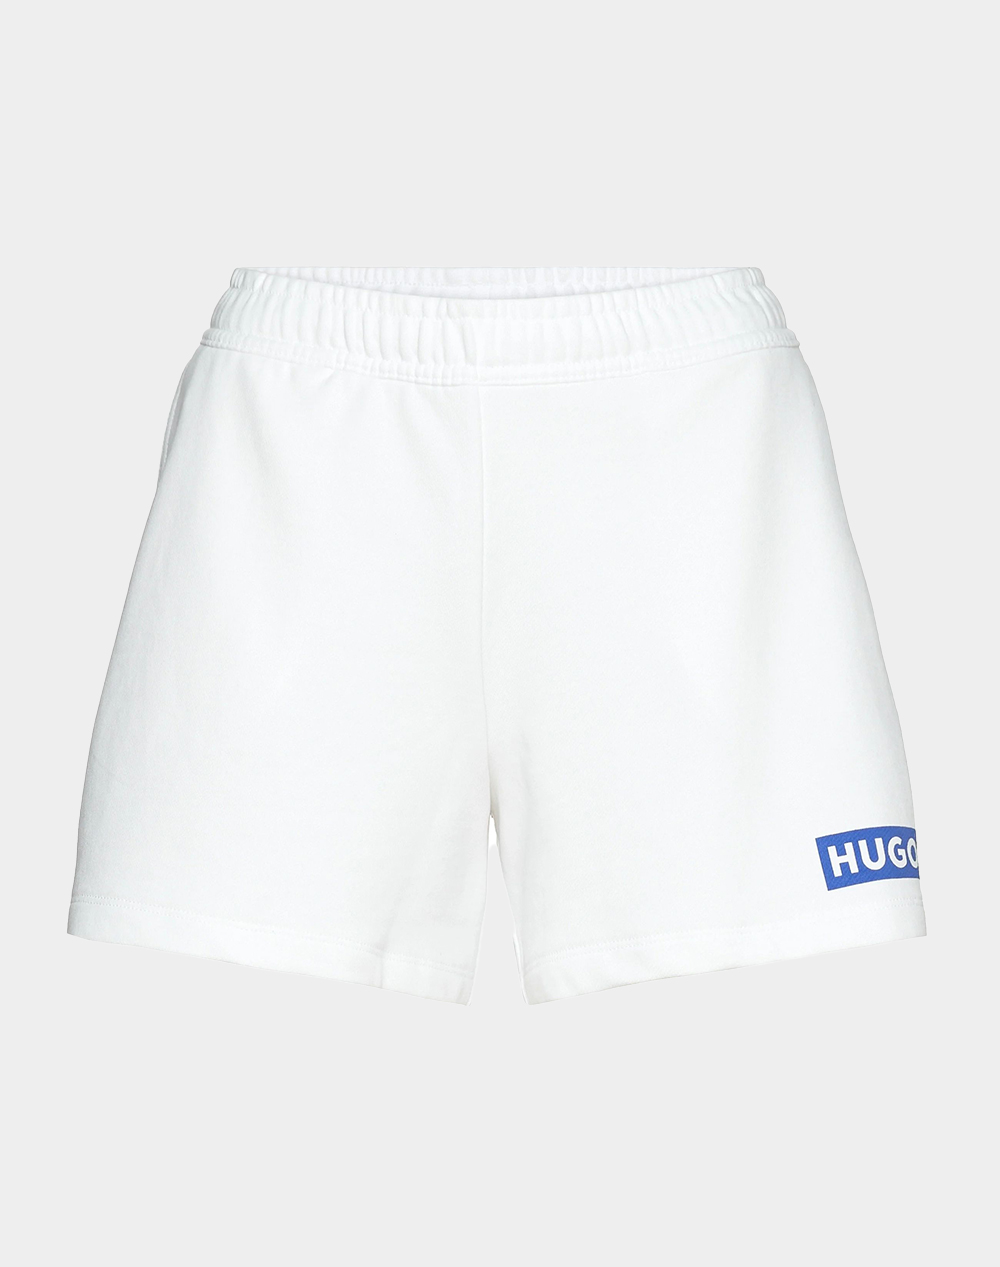 HUGO Classic Shorts_B_1 10231445 01 50515824-100 White